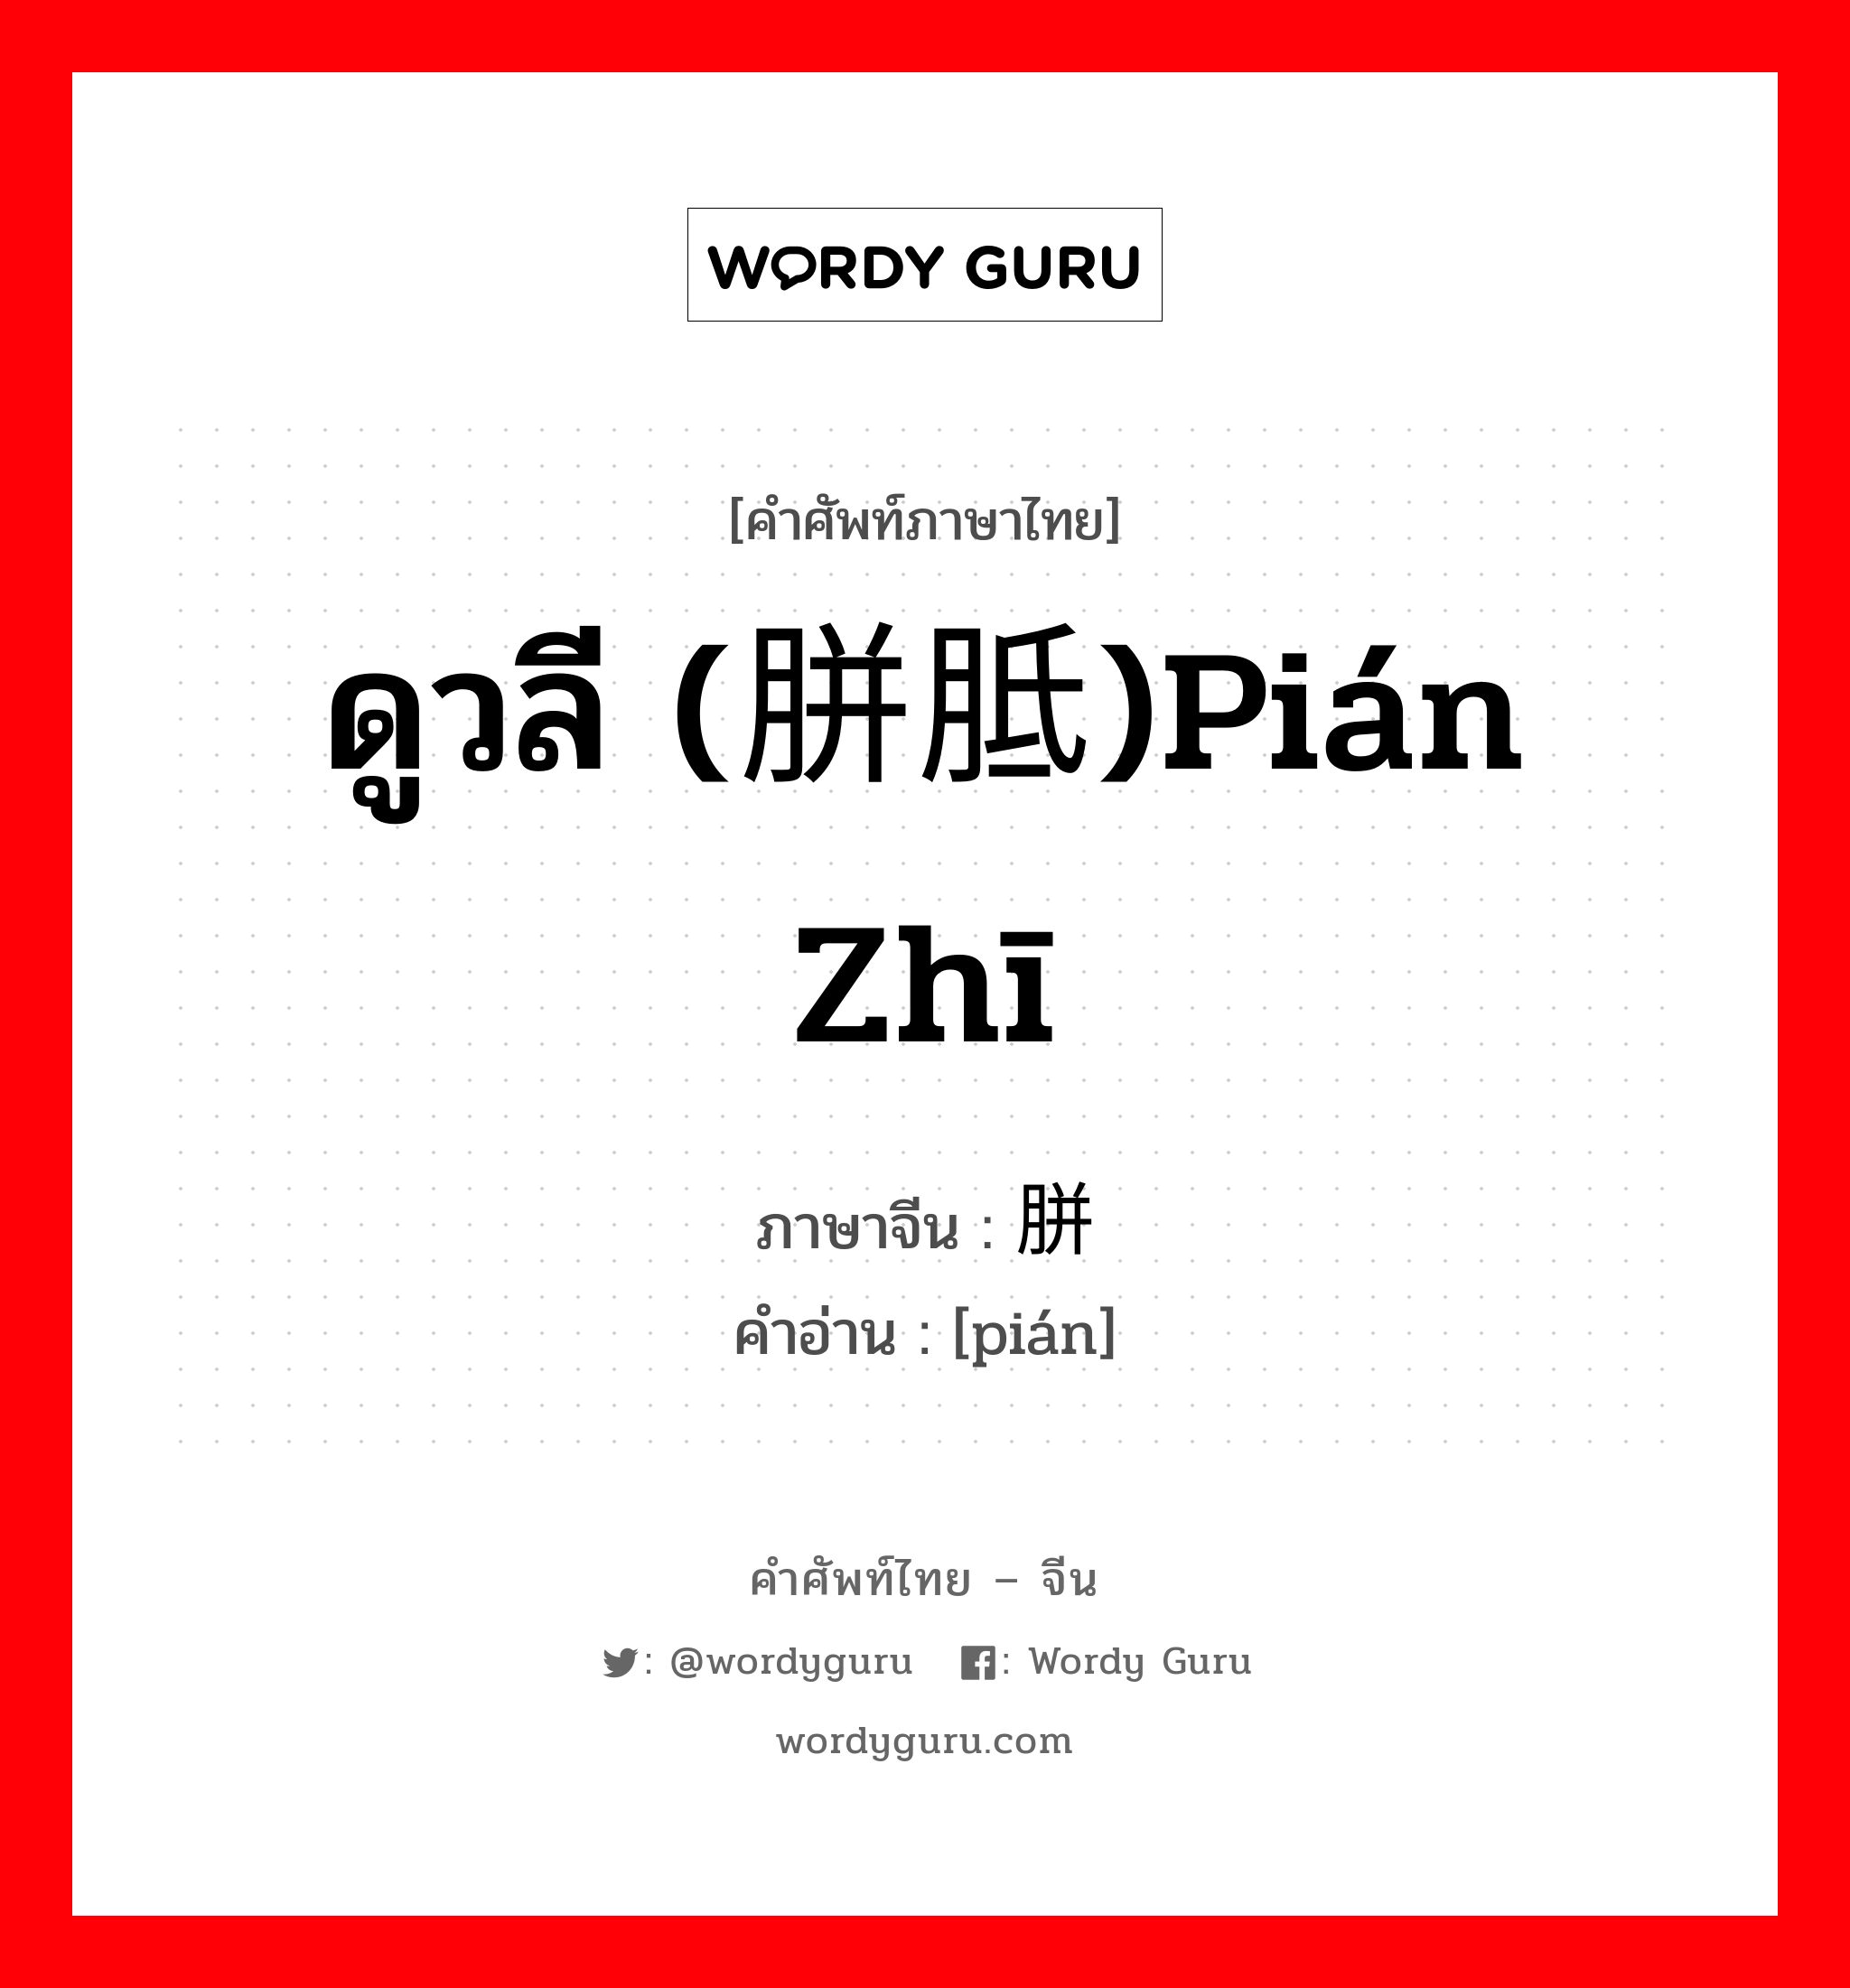 ดูวลี (胼胝)pián zhī ภาษาจีนคืออะไร, คำศัพท์ภาษาไทย - จีน ดูวลี (胼胝)pián zhī ภาษาจีน 胼 คำอ่าน [pián]